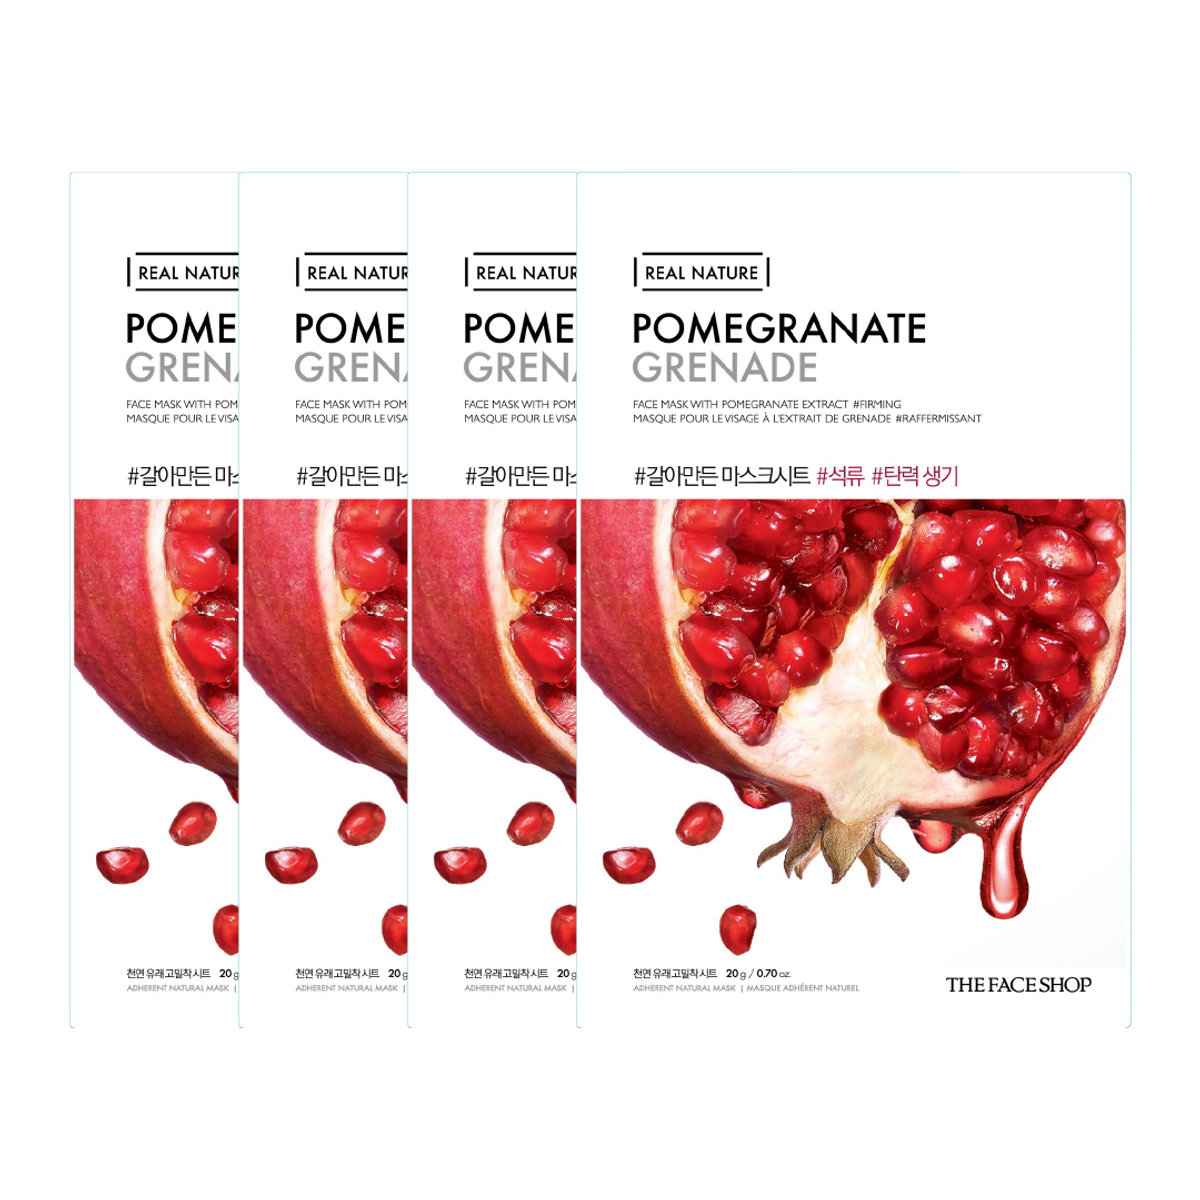 gift-combo-4-mat-na-phuc-hoi-do-am-va-chong-oxy-hoa-thefaceshop-real-nature-pomegranate-20g-1